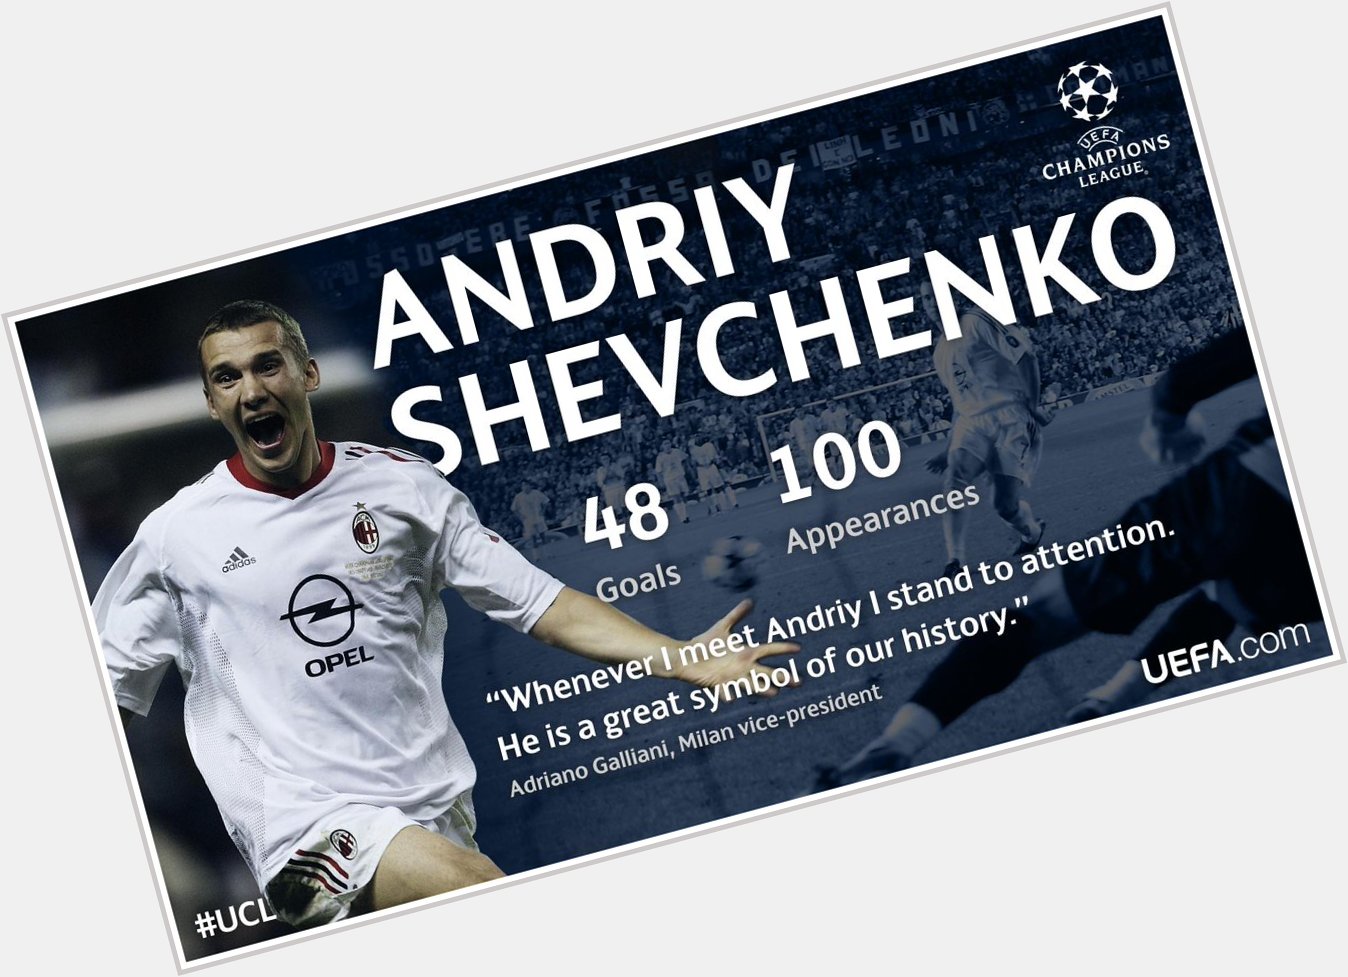 Happy birthday, legend Andriy Shevchenko! 